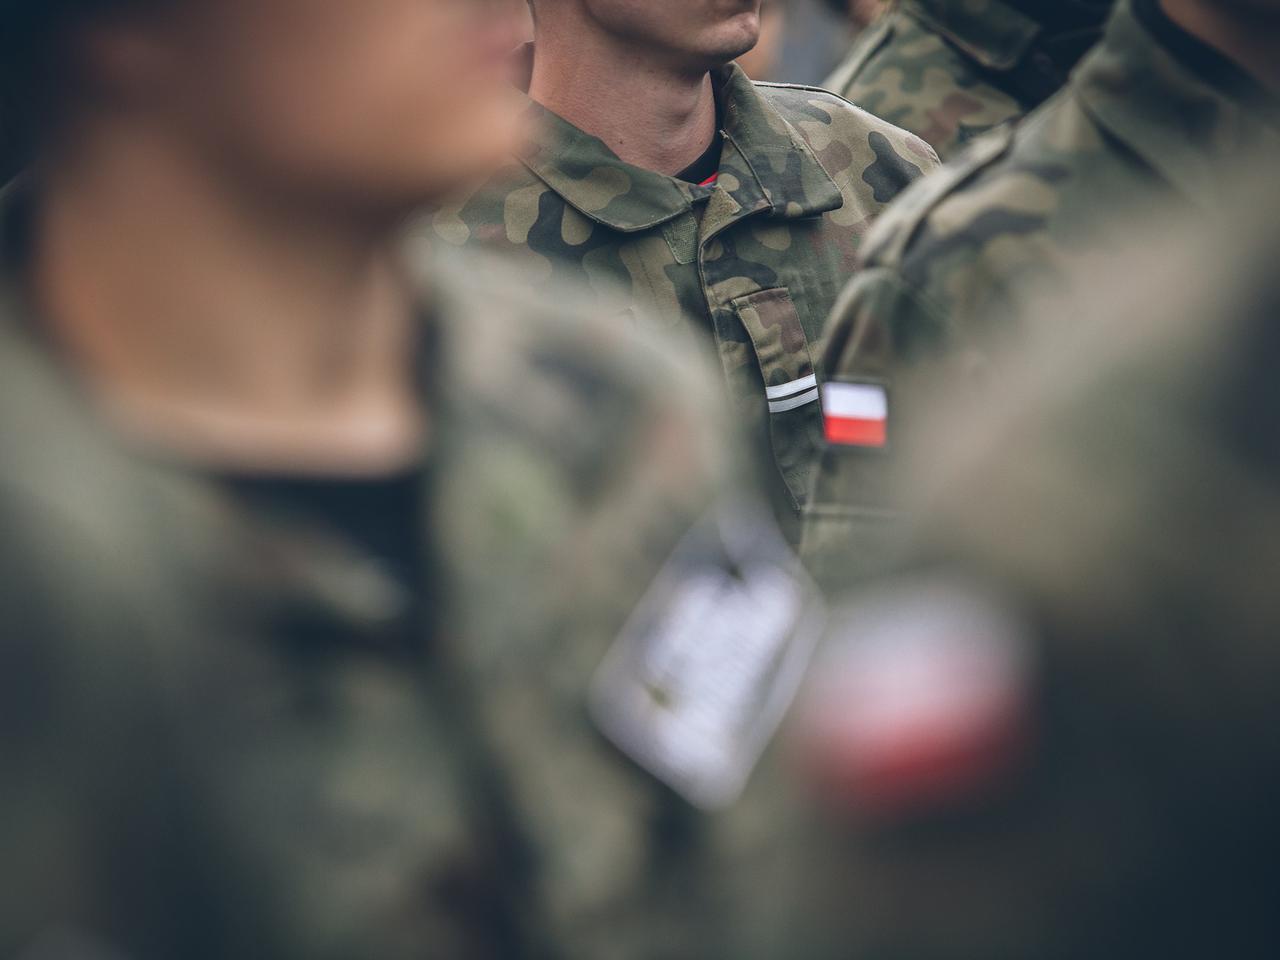 Kwalifikacja wojskowa 2022 w Płocku. Jak wygląda kwalifikacja wojskowa 2022? Jakie są kategorie?